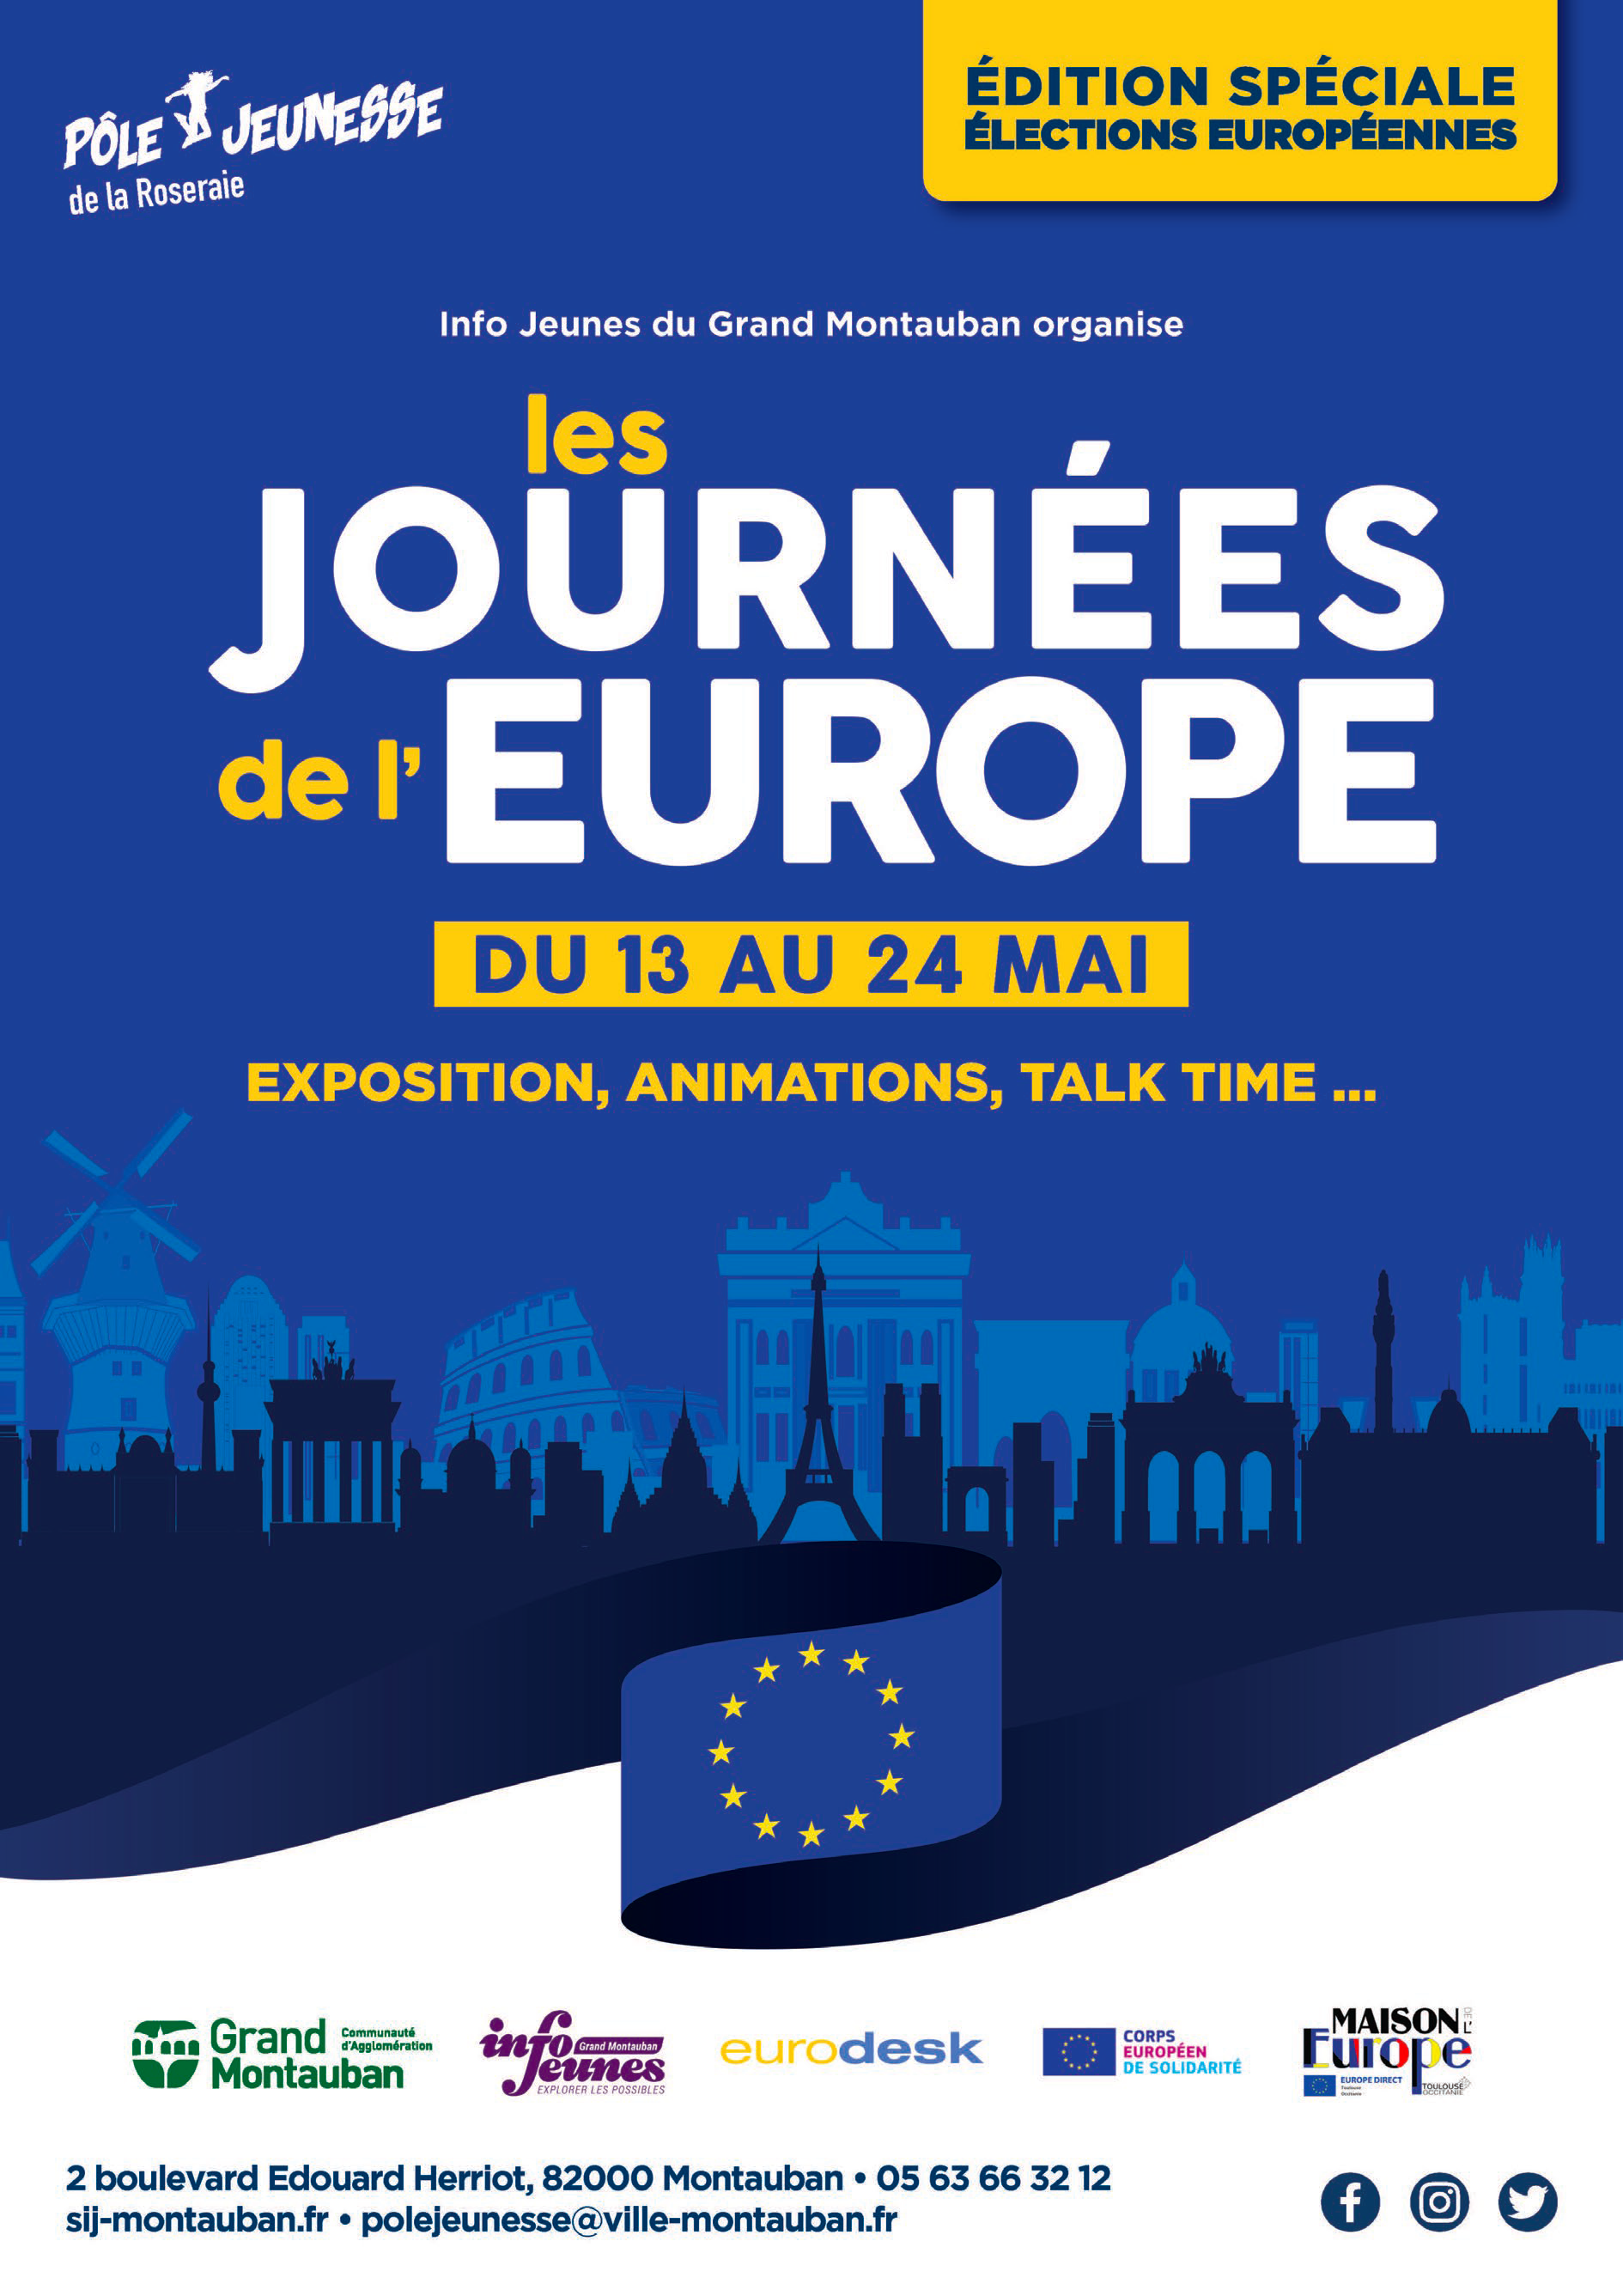 Les Journées de l’Europe, c’est à Montauban du 13 au 24 mai